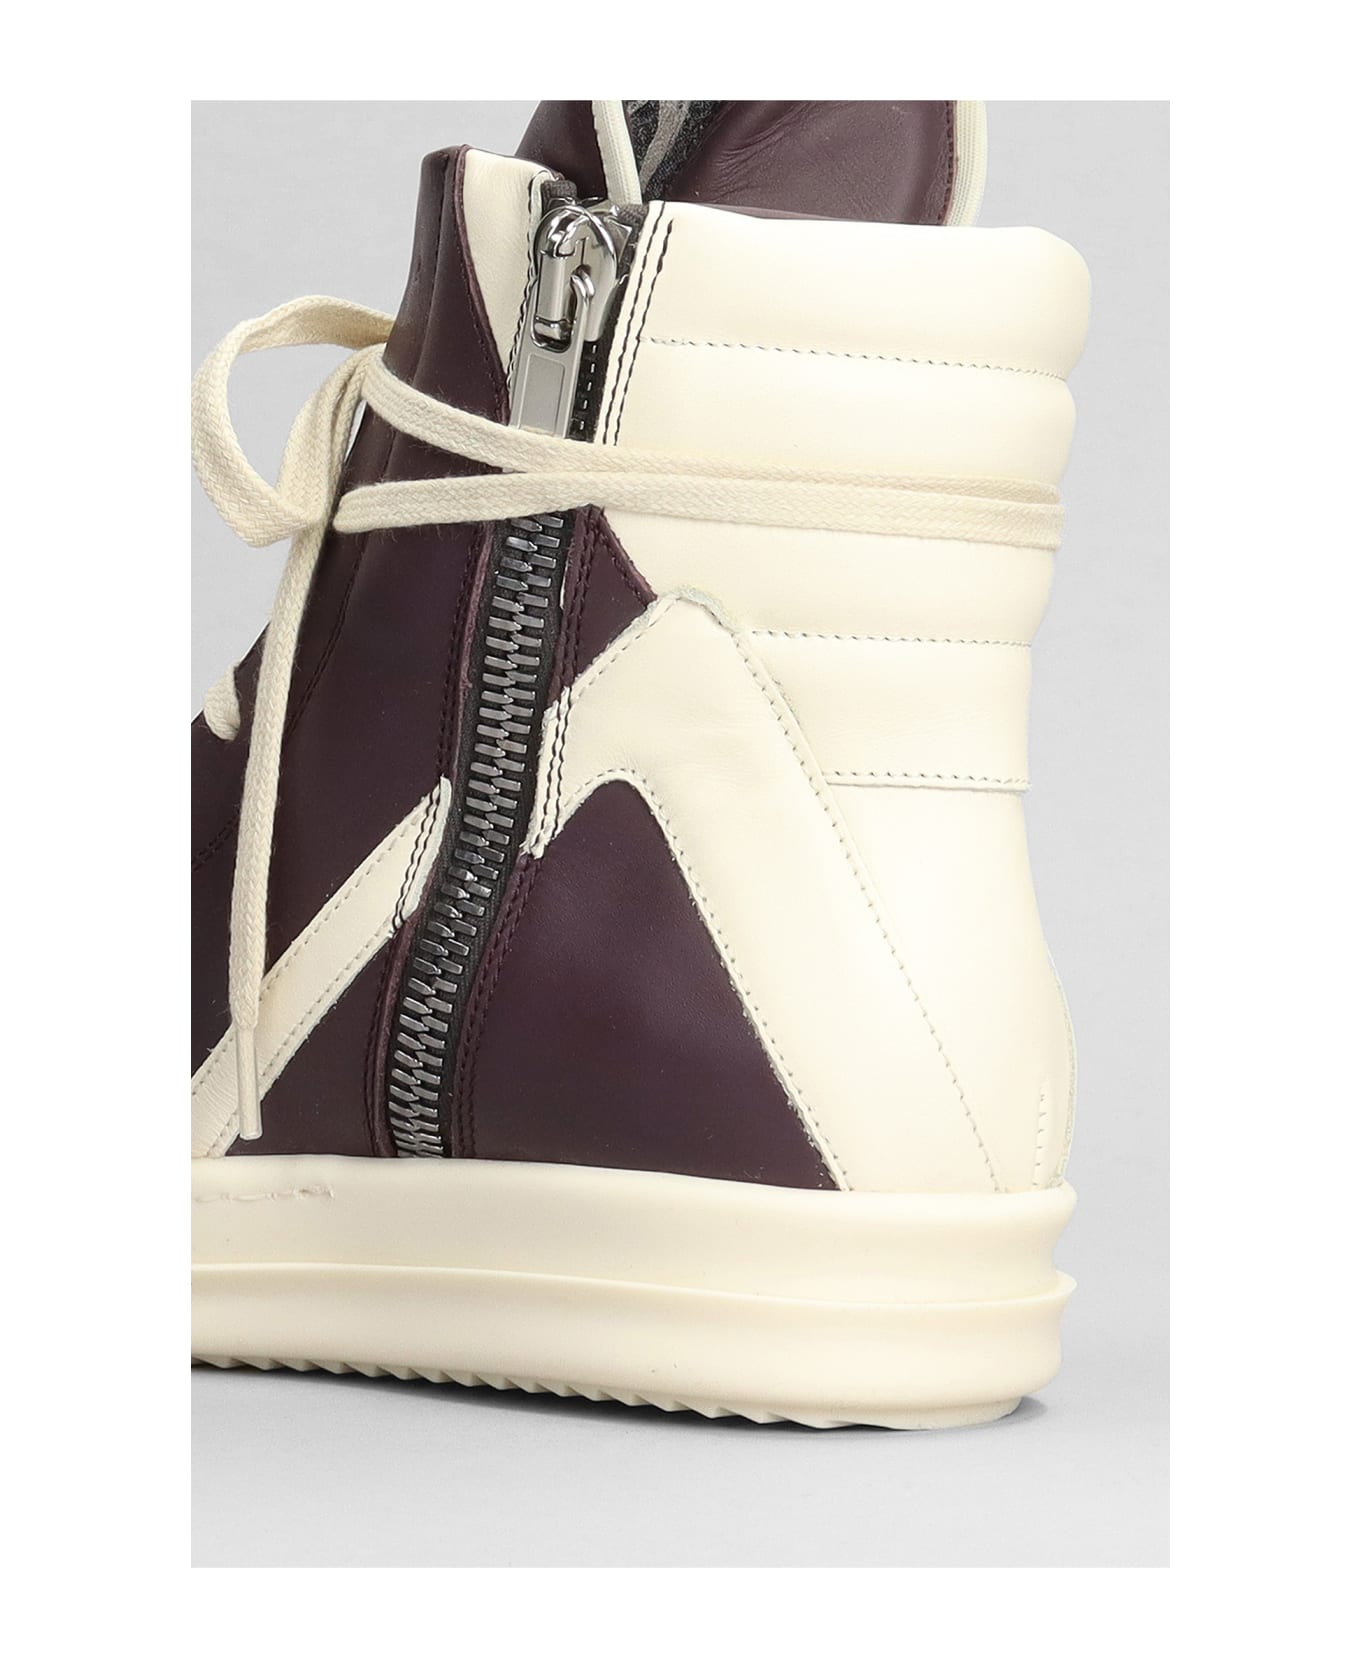 Rick Owens Geobasket Sneakers In Viola Leather - Viola